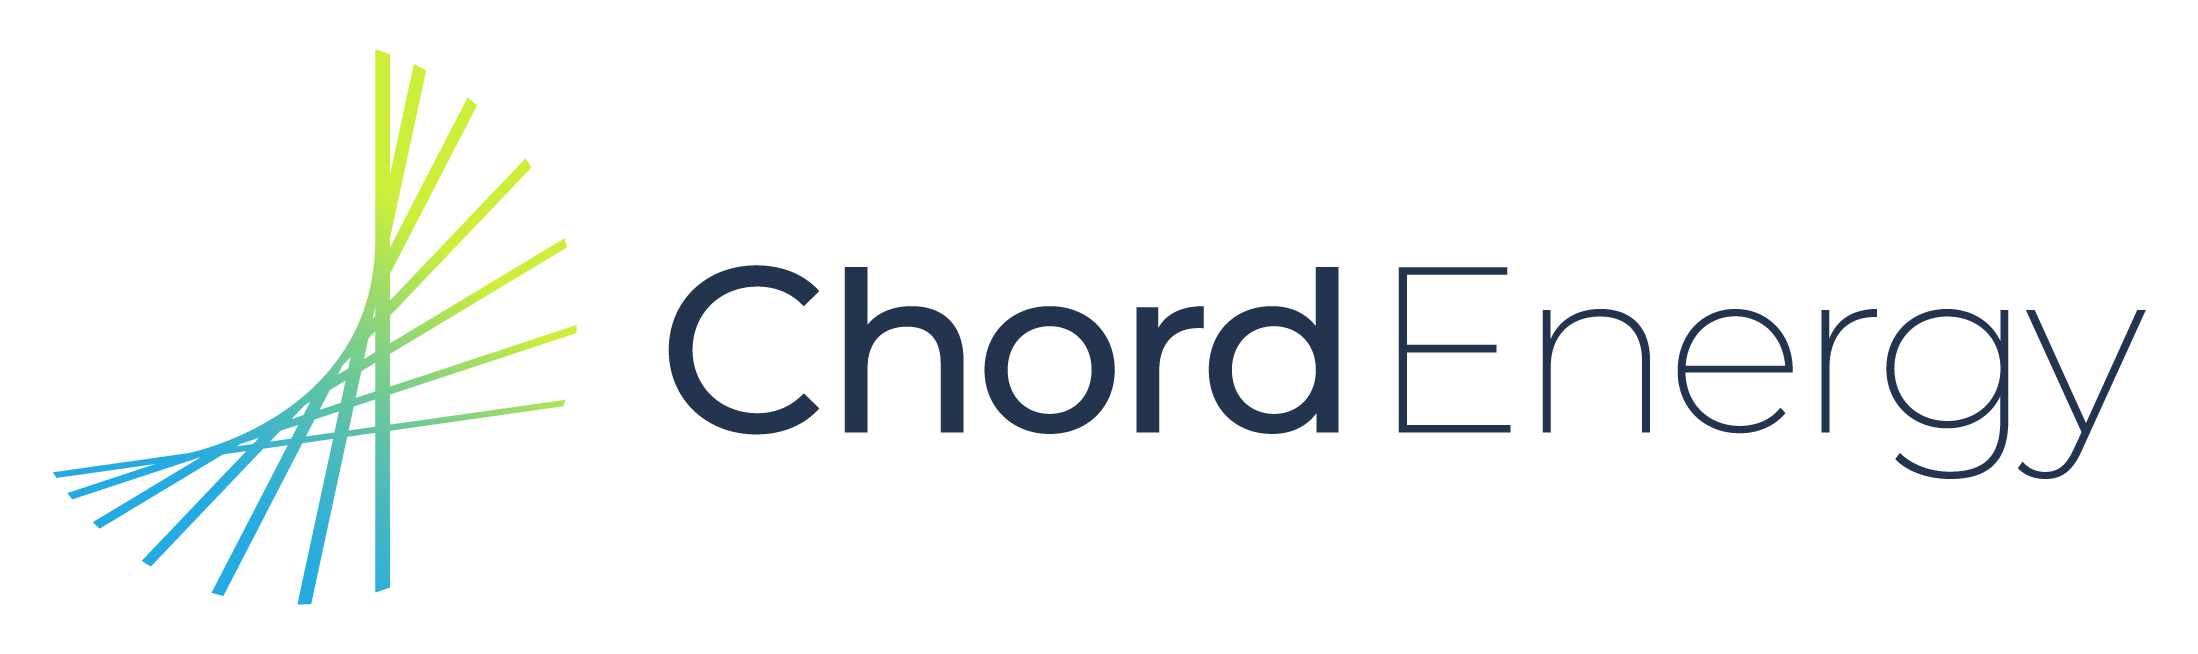 Chord Energy Logo